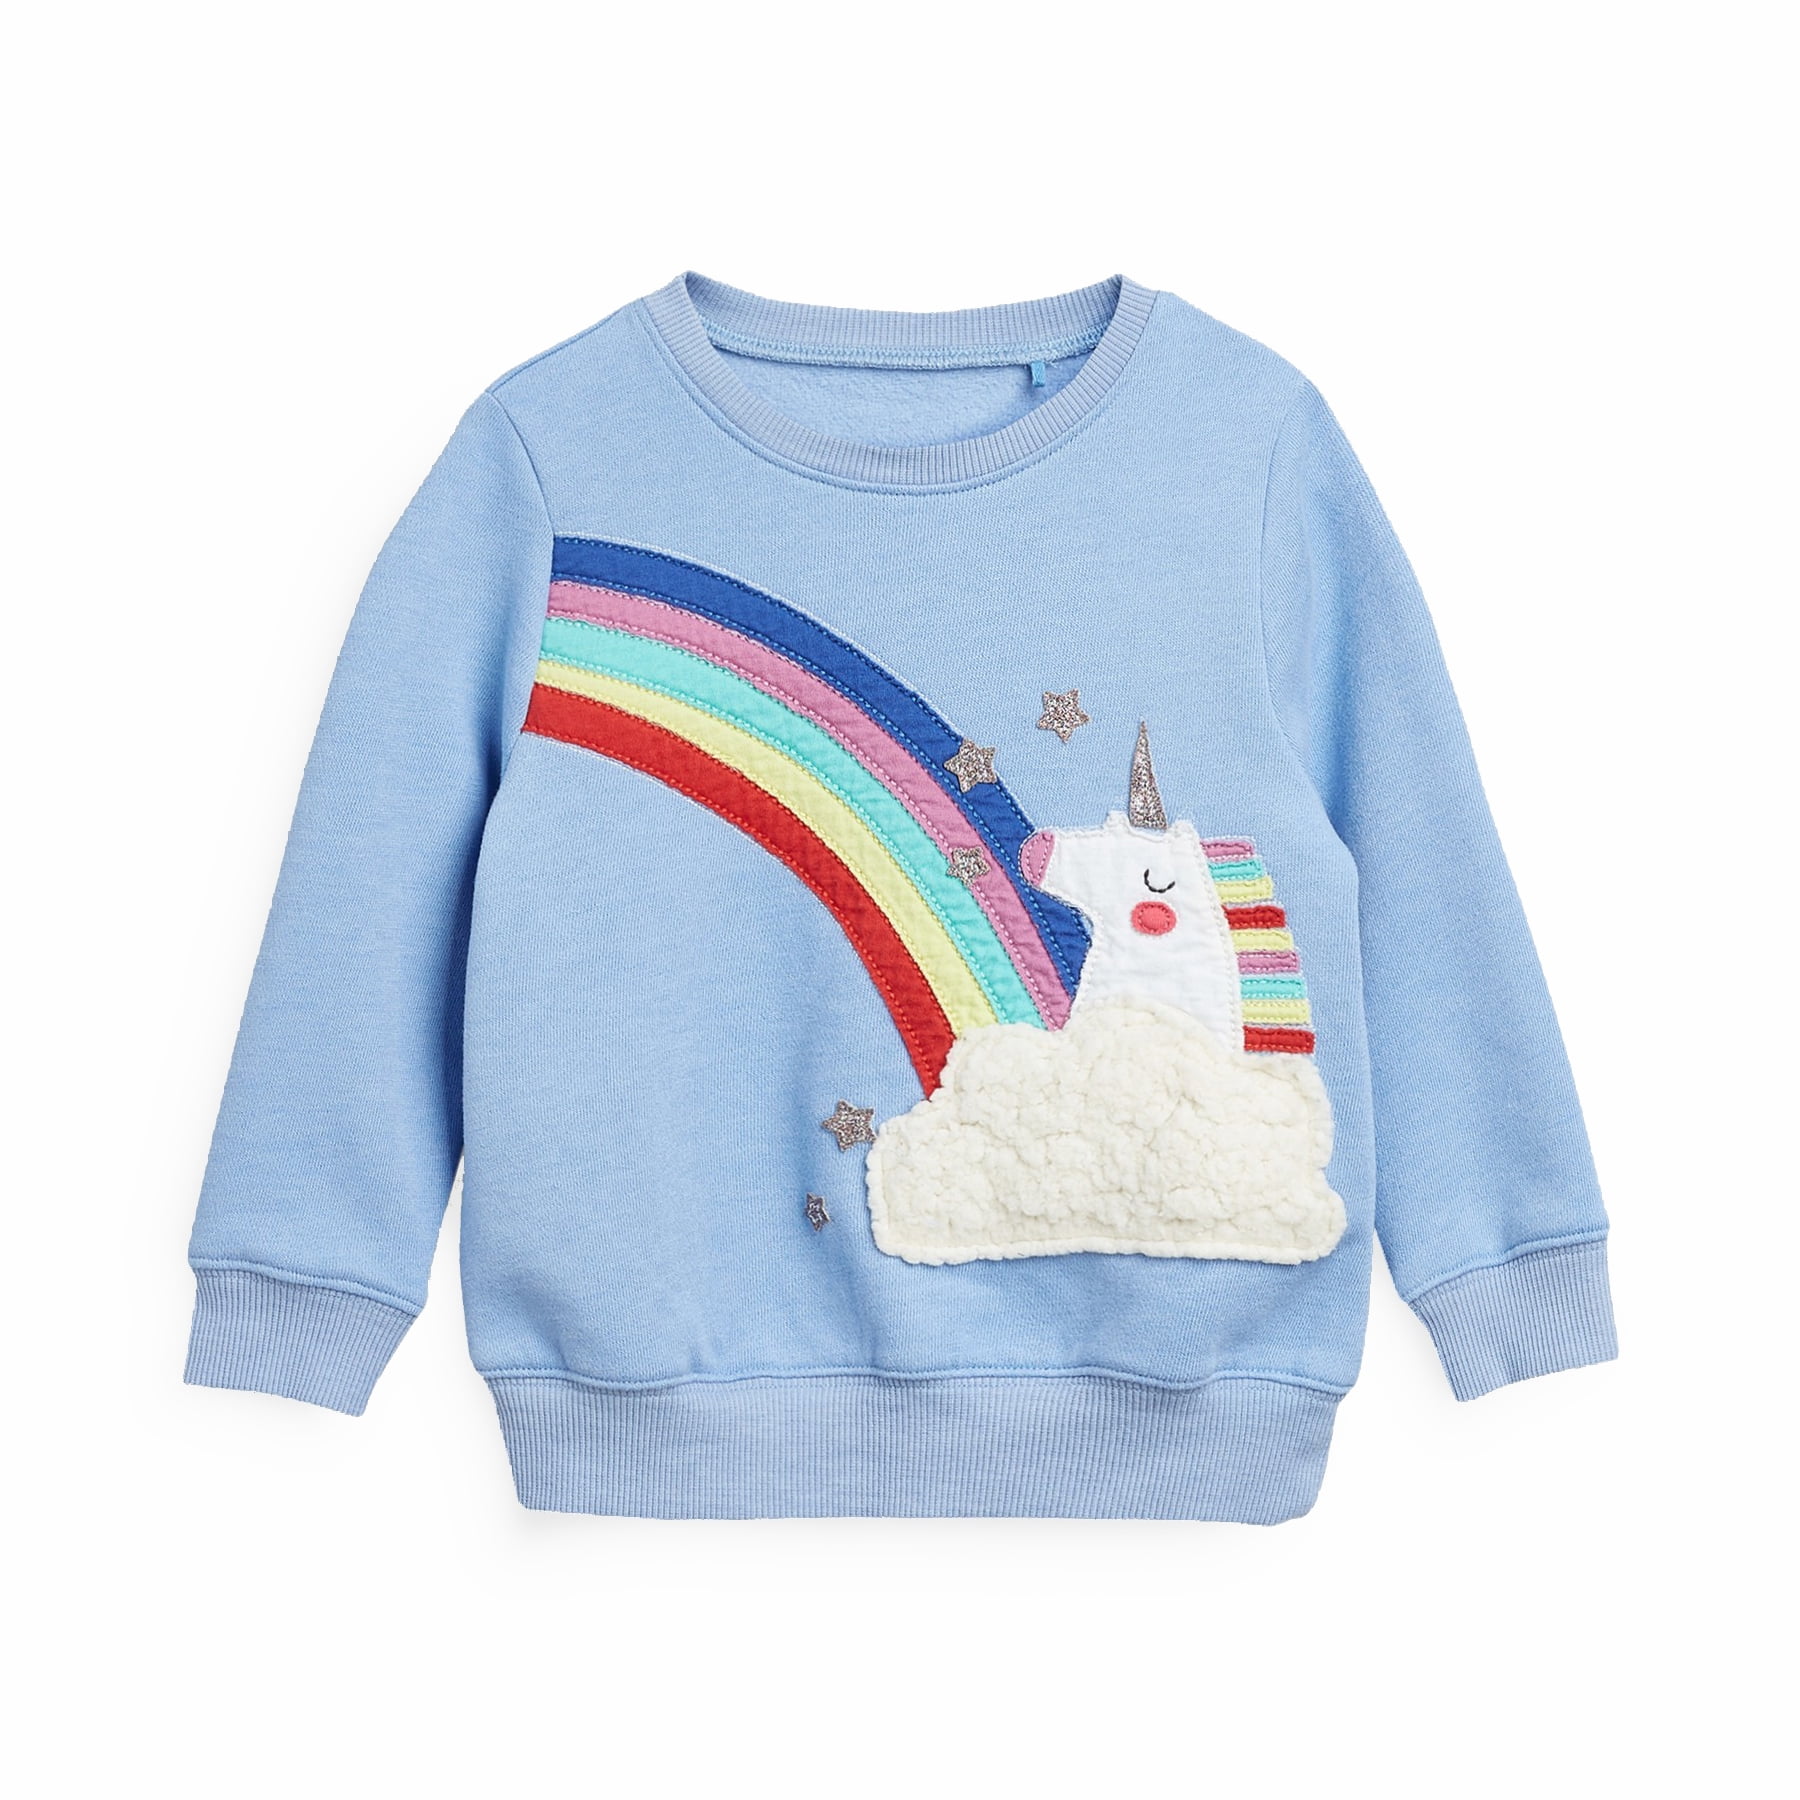 DDSOL Toddler Girls Sweater Crewneck Cute Sweatshirt Long Sleeve Tees ...